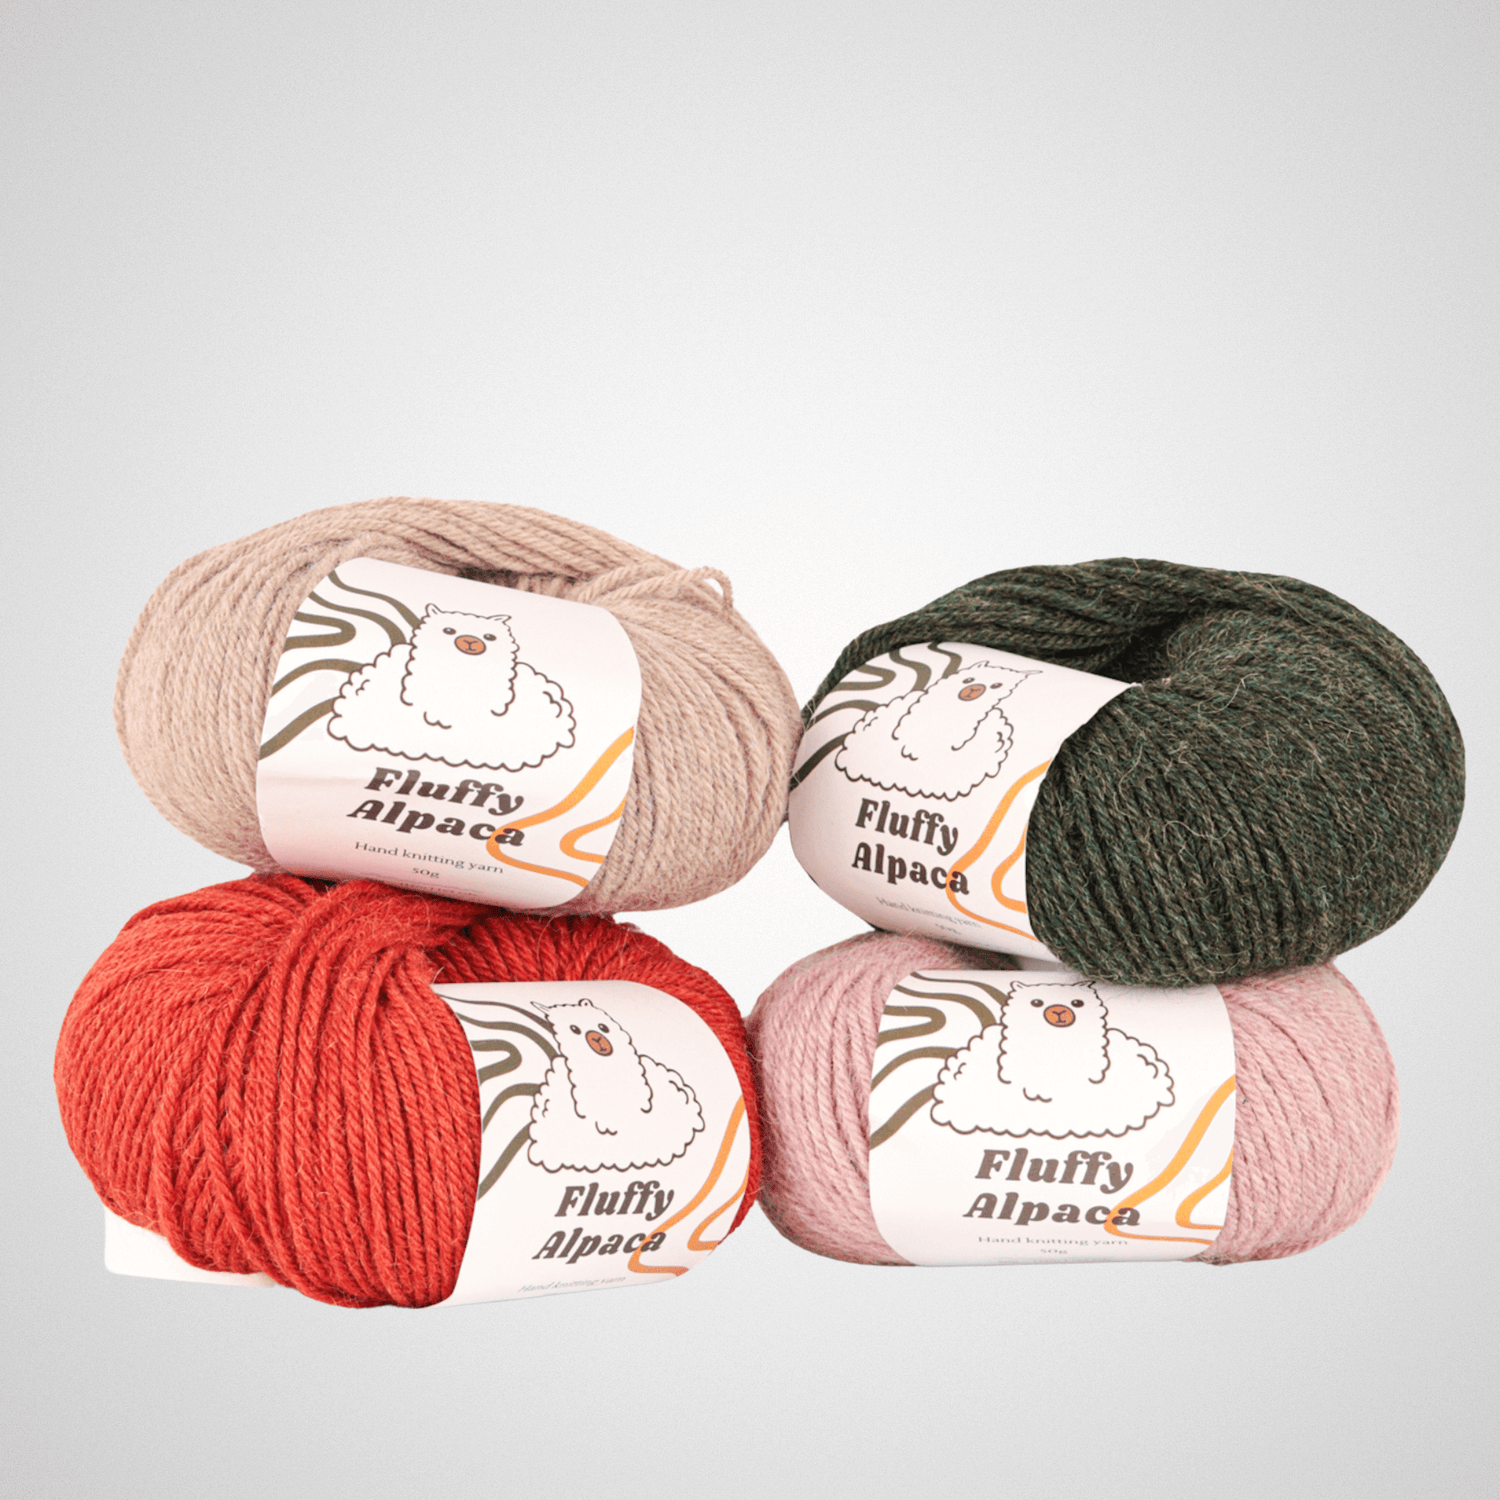 Fluffy Alpaca - Knitting thread - 100% alpaca wool - Pink